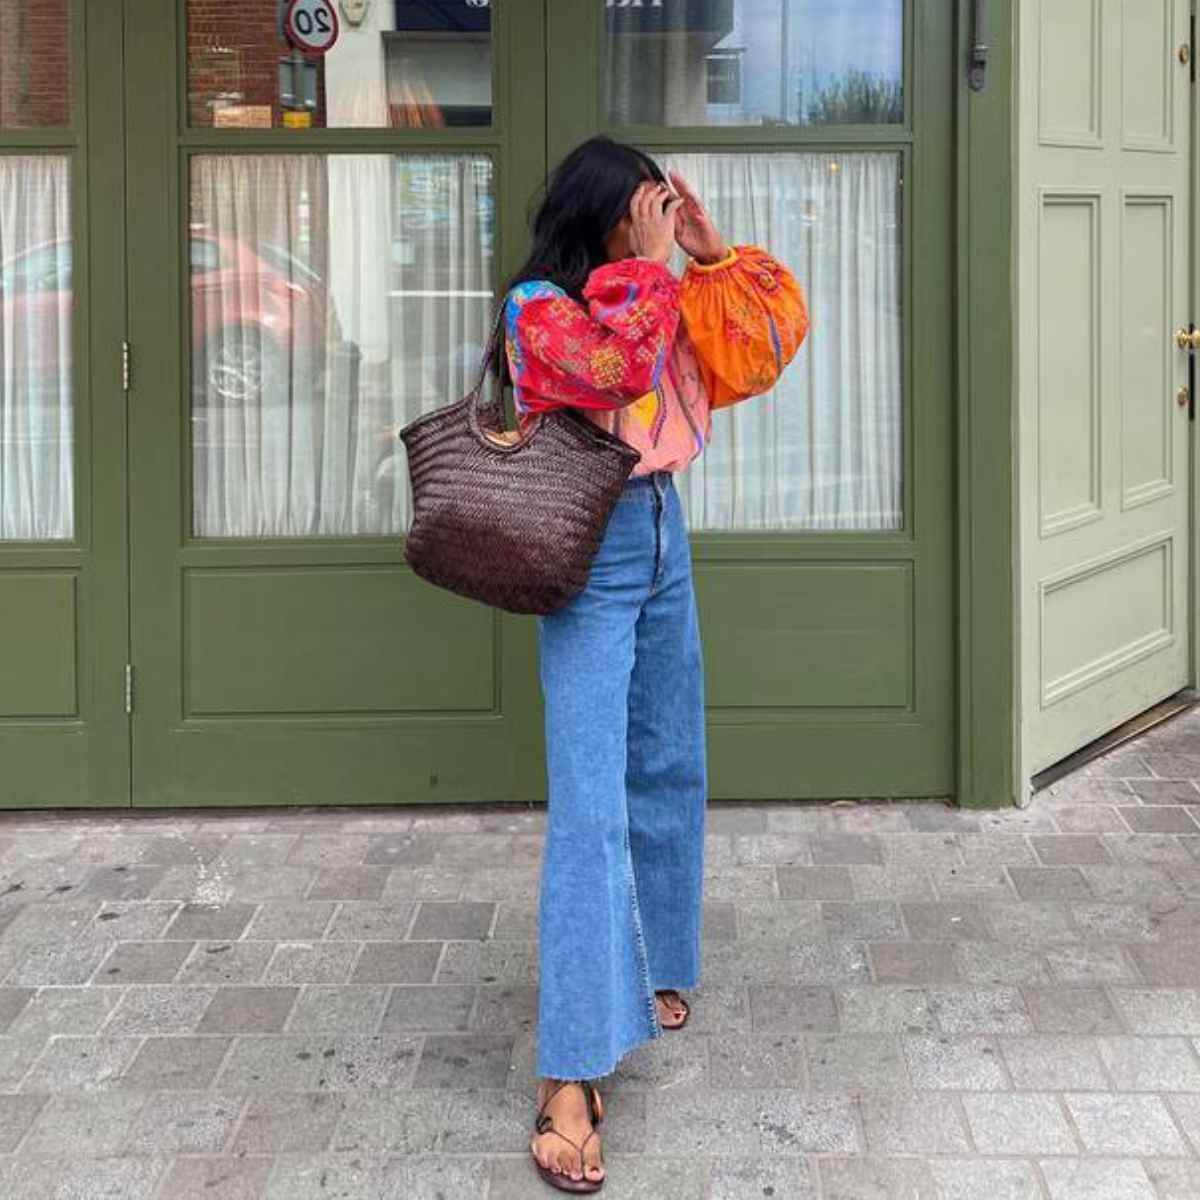 Zara tiene los 'jeans' cargo que ya son virales en TikTok